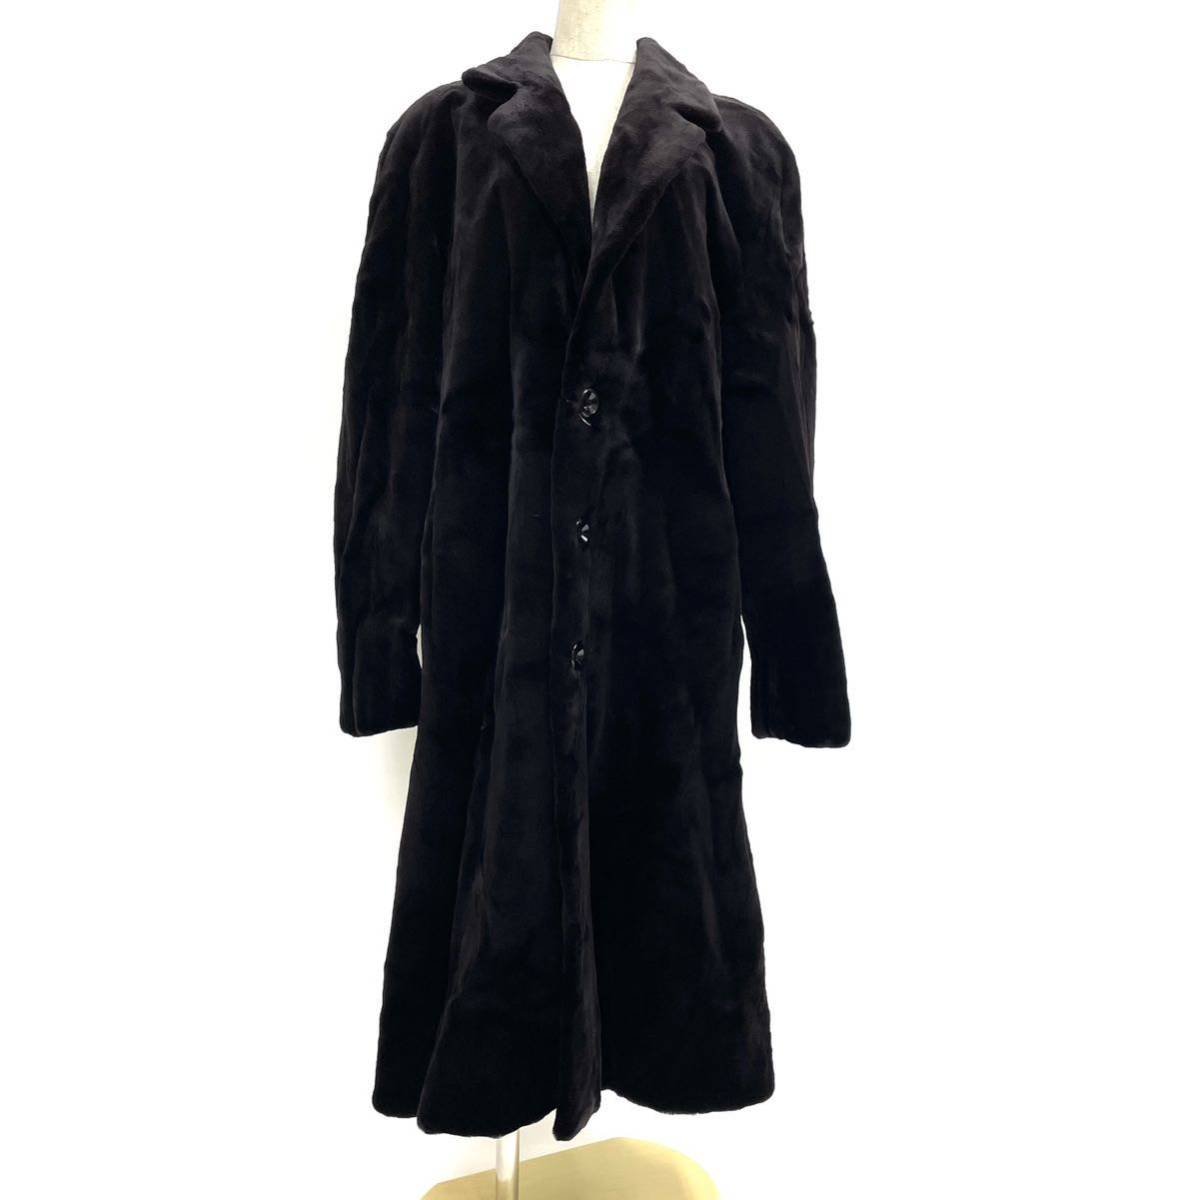 【七福】fk1276 紳士コート メンズコート ロングコート デザインコート ブラックミンク シェアードミンク 貂皮 mink 身丈 約 115cm_画像1